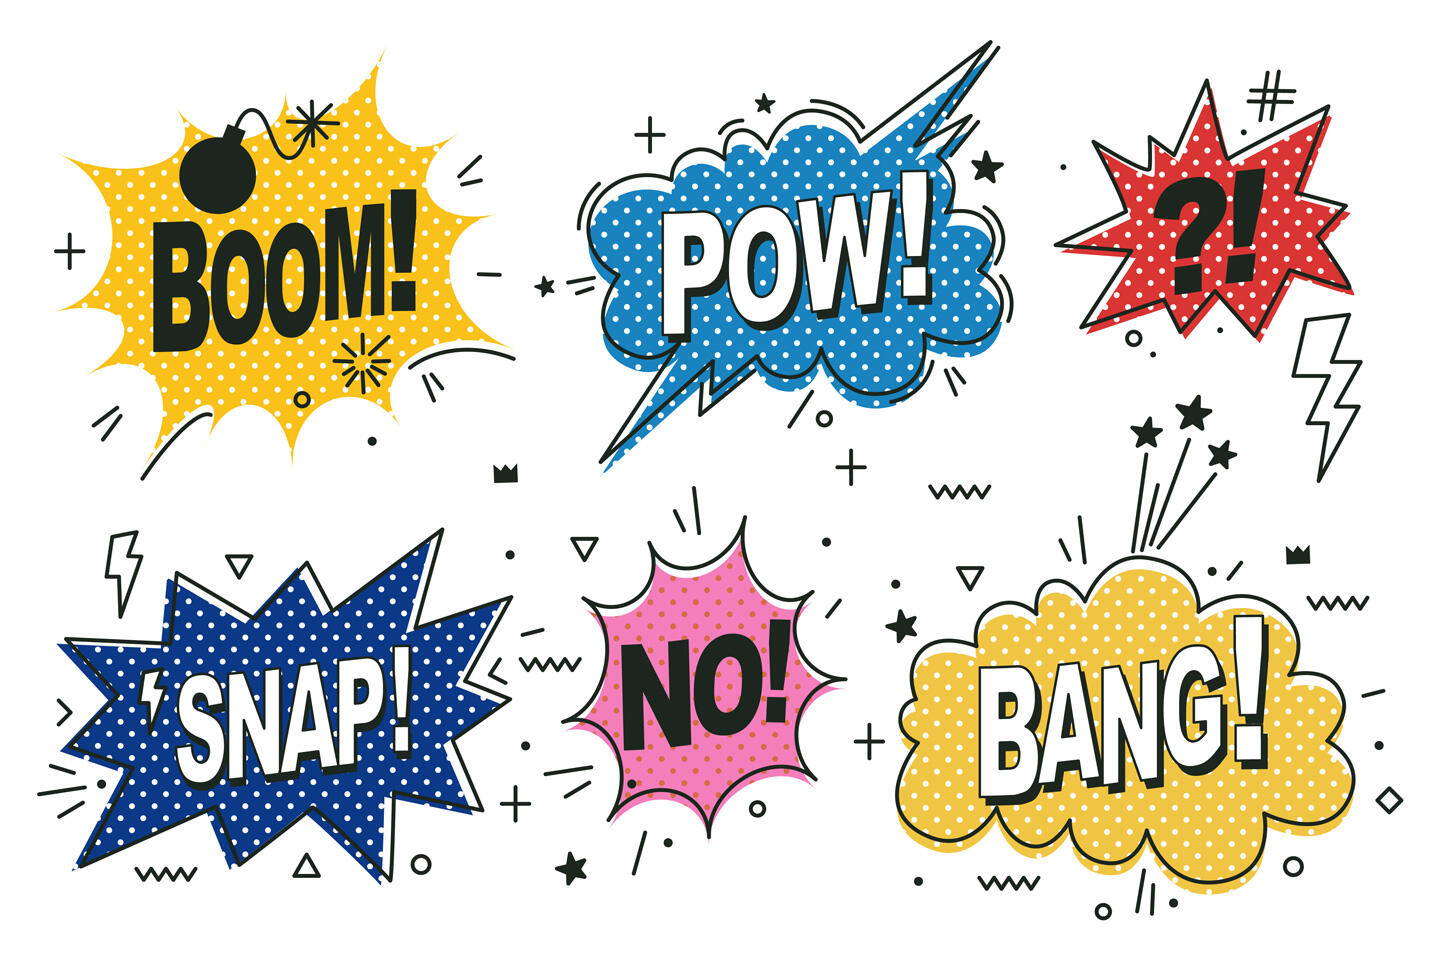 Diverses bulles de dialogue de style bande dessinée avec des mots comme "BOOM!", "POW!", "SNAP!", "NO!", et "BANG!" dans des couleurs vives et des motifs à pois, étoiles et éclairs, évoquant l'énergie et le dynamisme de la bande dessinée.